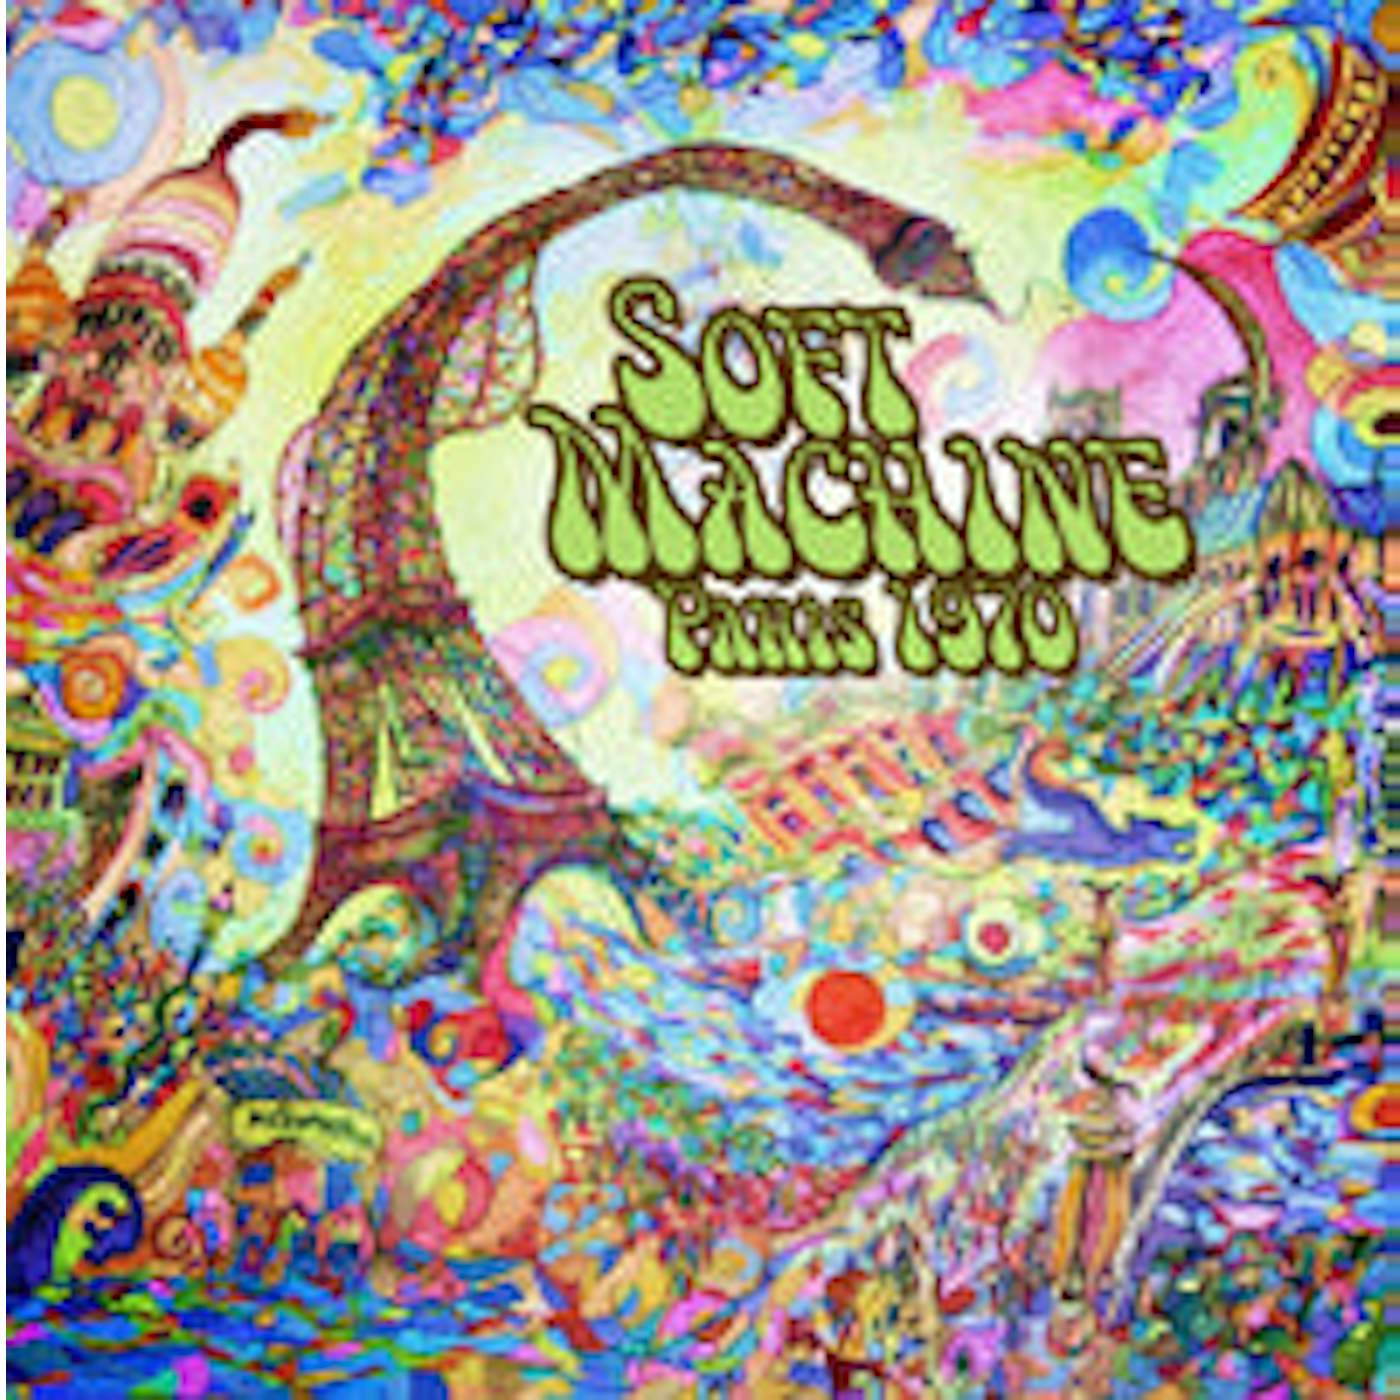 Soft Machine LP - Paris 1970 (Limited Coloured Vinyl)